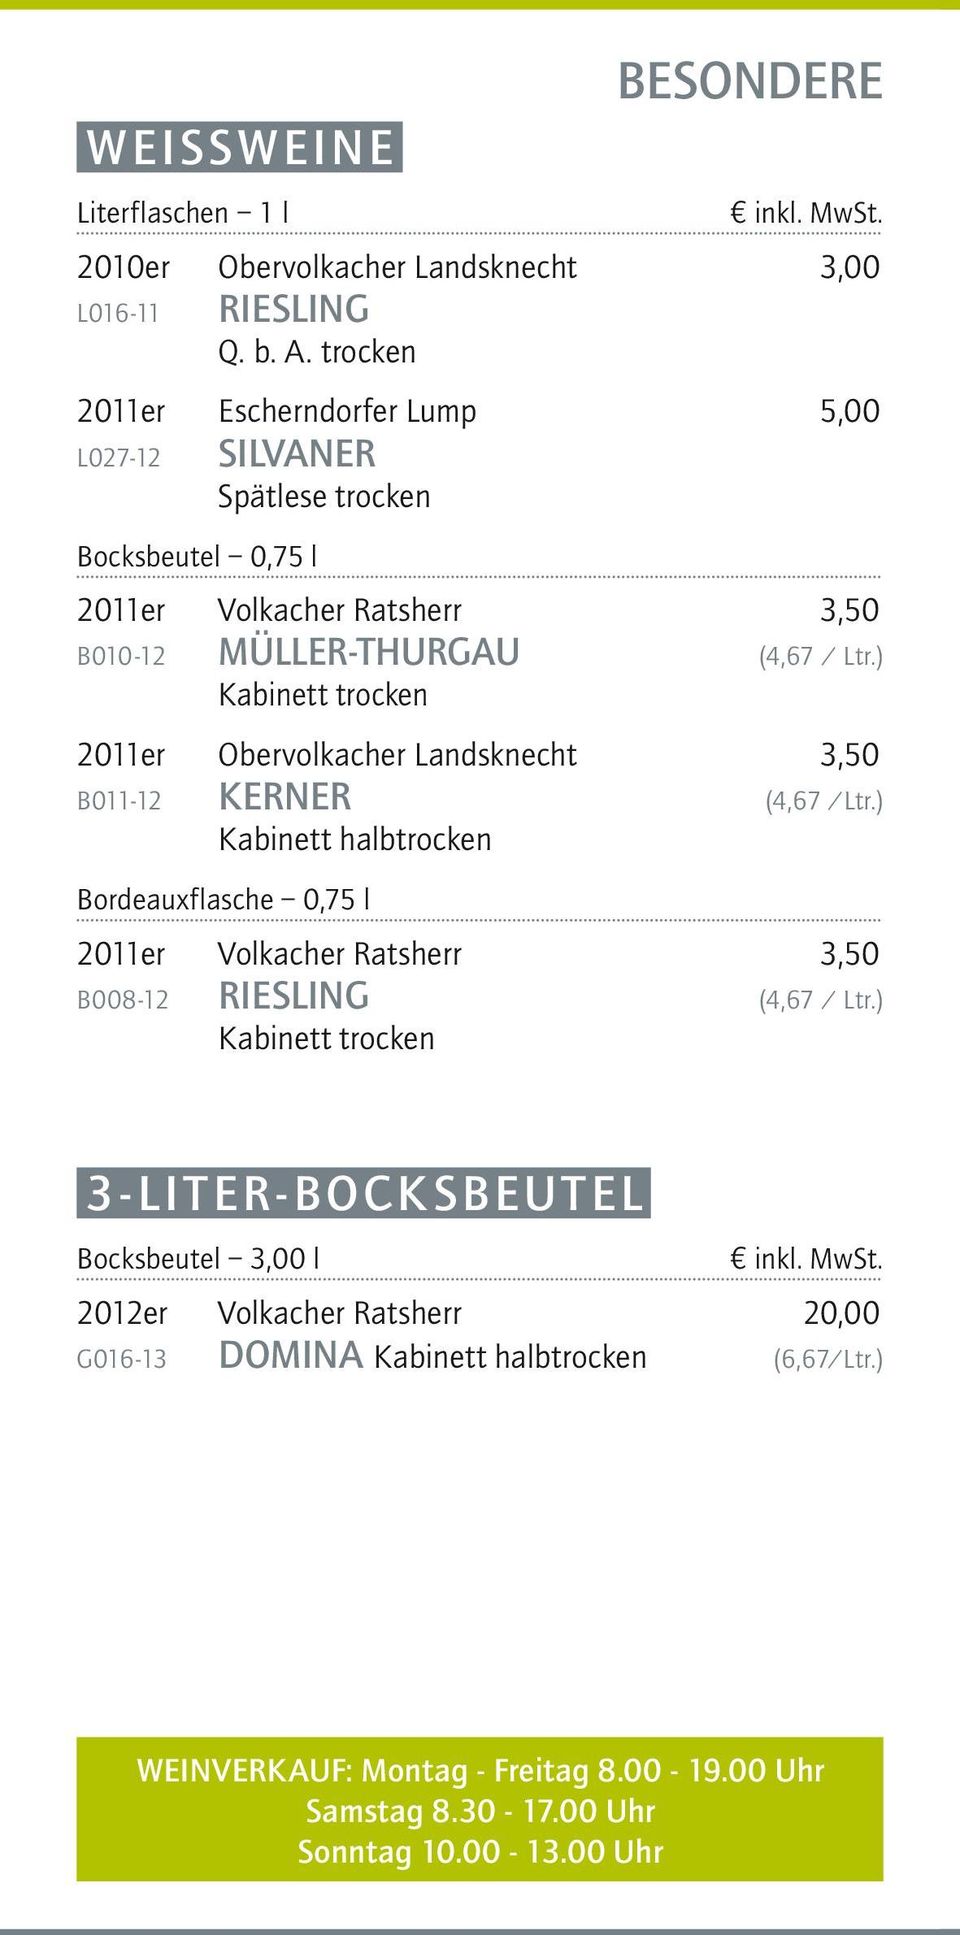 ) 2011er Obervolkacher Landsknecht 3,50 B011-12 KERNER (4,67 /Ltr.